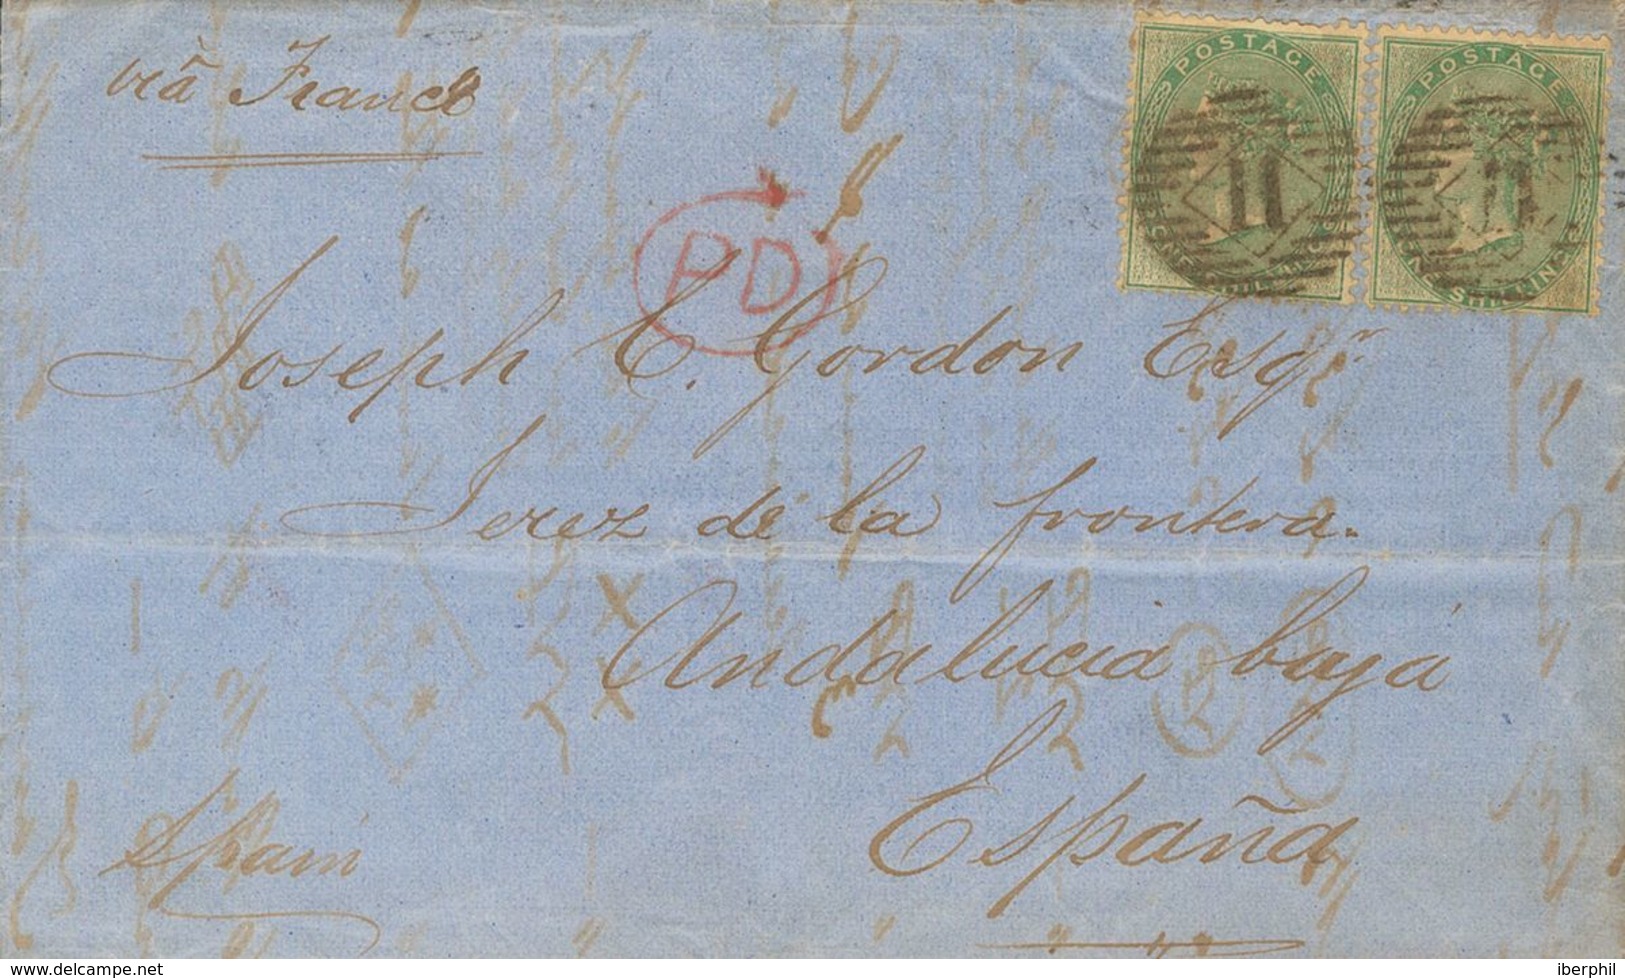 Great Britain. COVER20(2). 1861. 1 Green Shilling, Two Stamps. LONDON To JEREZ DE LA FRONTERA. Postmark Numeral "11". VE - ...-1840 Préphilatélie